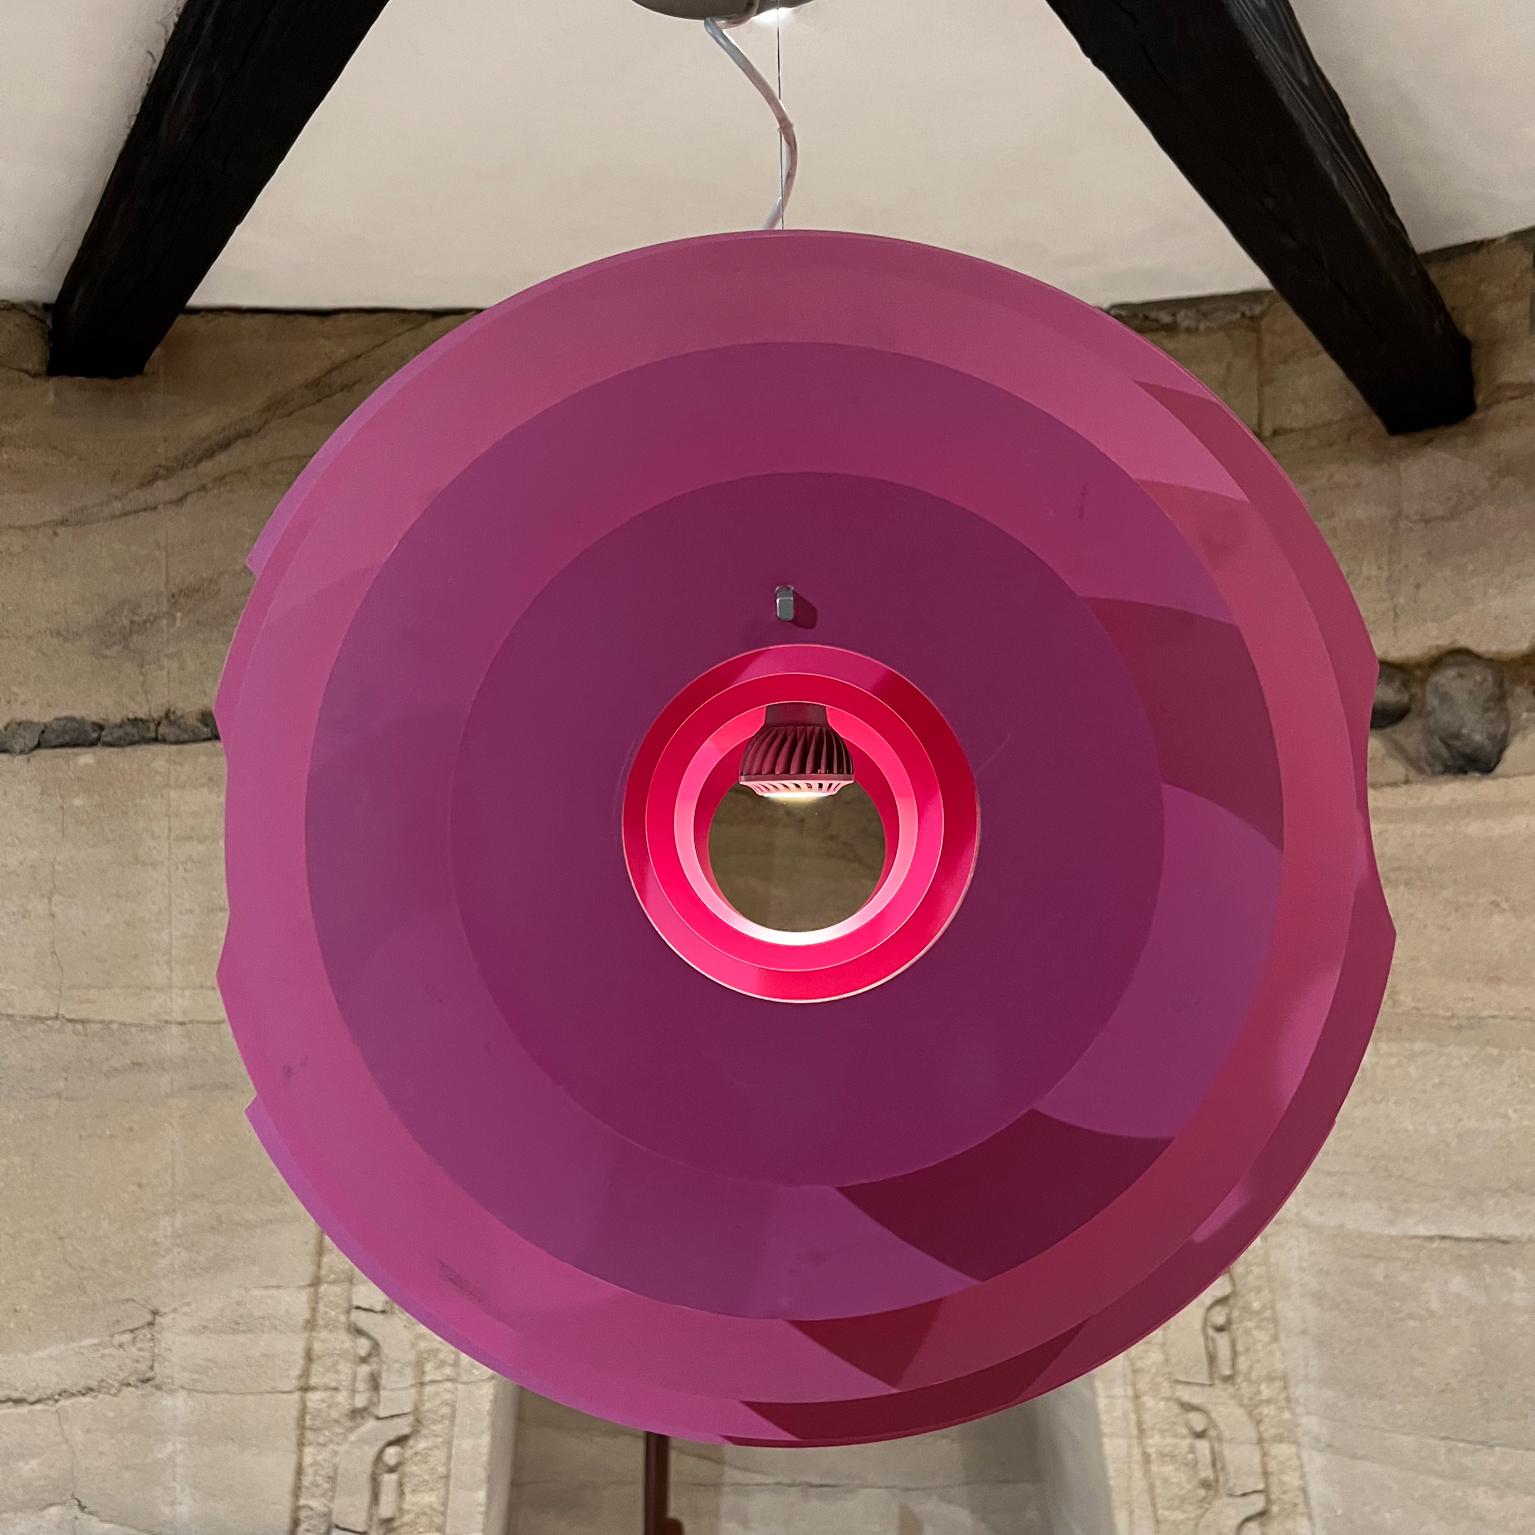 Lampada a sospensione Supernova dell'architetto designer Ferruccio Laviani per Foscarini Made in Italy
La luce fornisce un'illuminazione diffusa in tutte le direzioni
22,5 l x 20 p x 32,5 di altezza
Favolosi colori di rosa fucsia
Alluminio rivestito